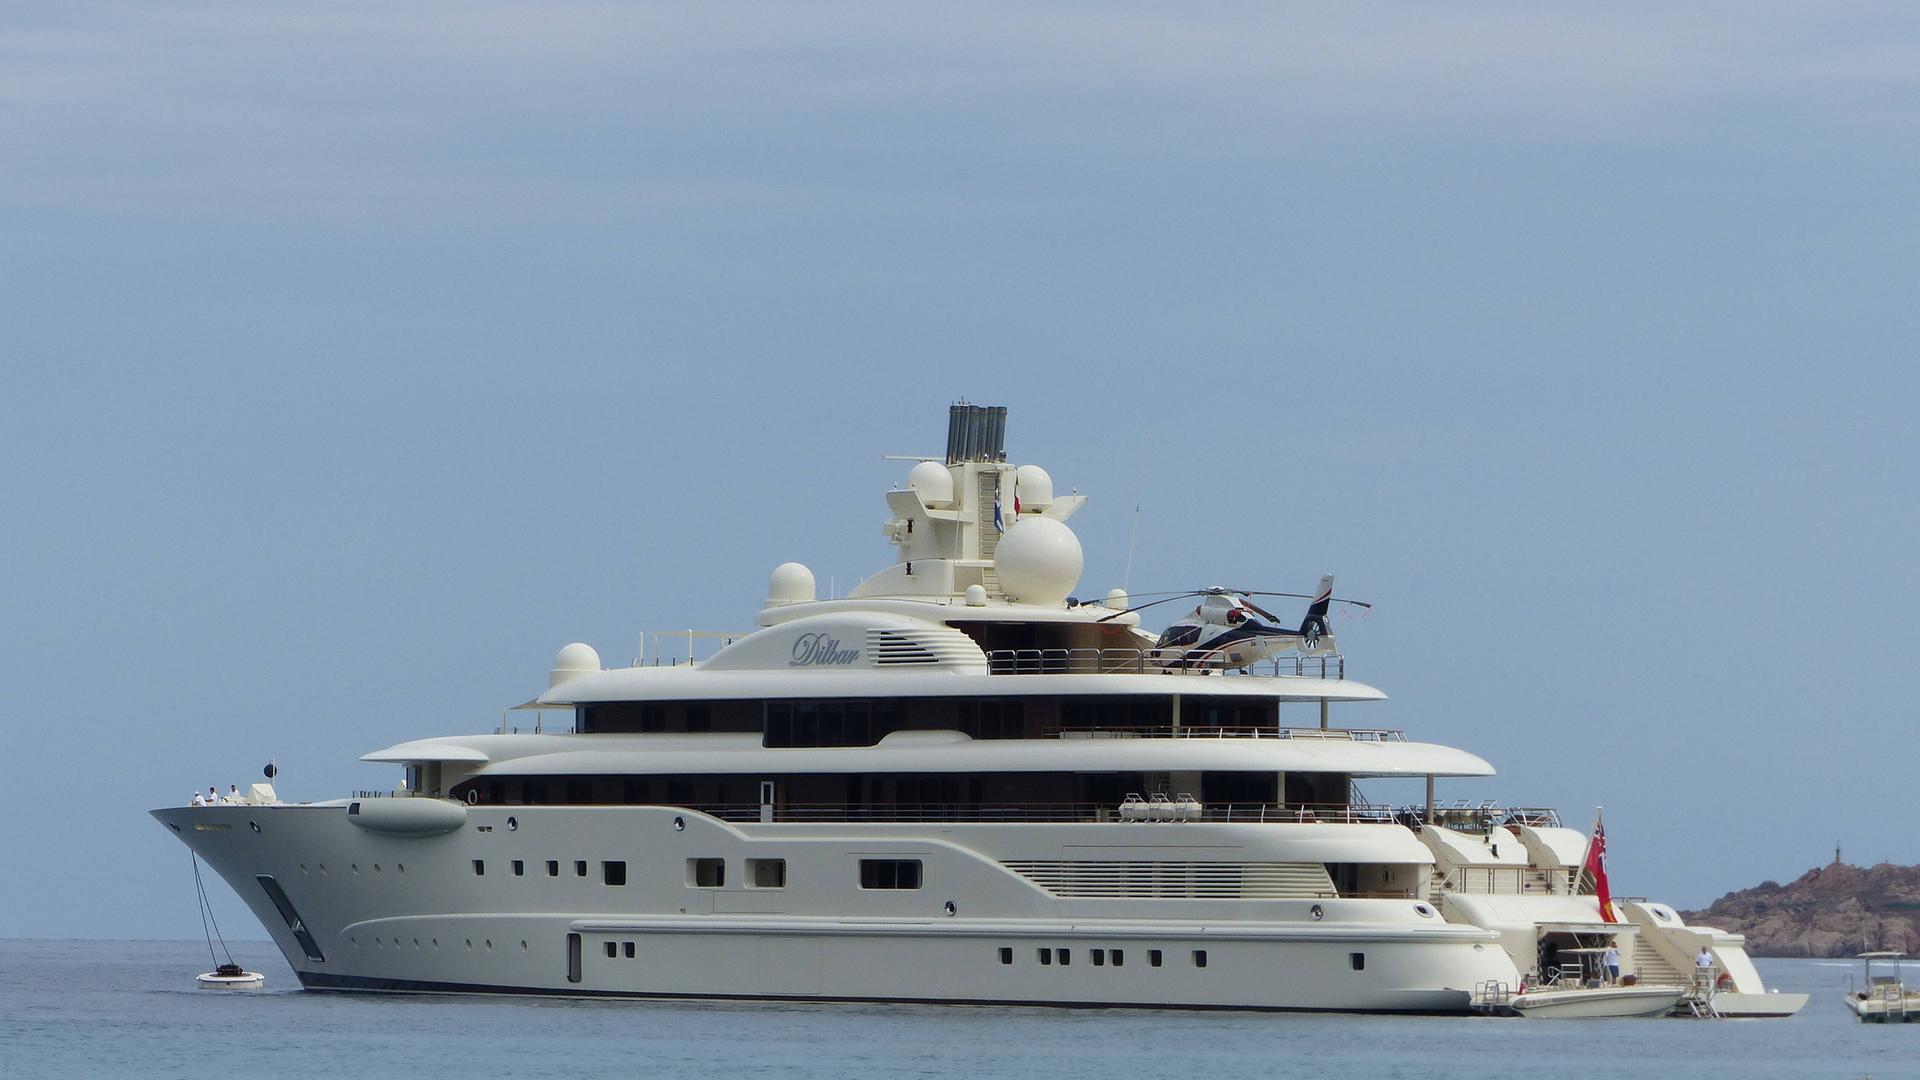 Die Luxusyacht Dilbar des russischen Oligarchen Alischer Usmanow liegt in Küstengewässern vor Anker.